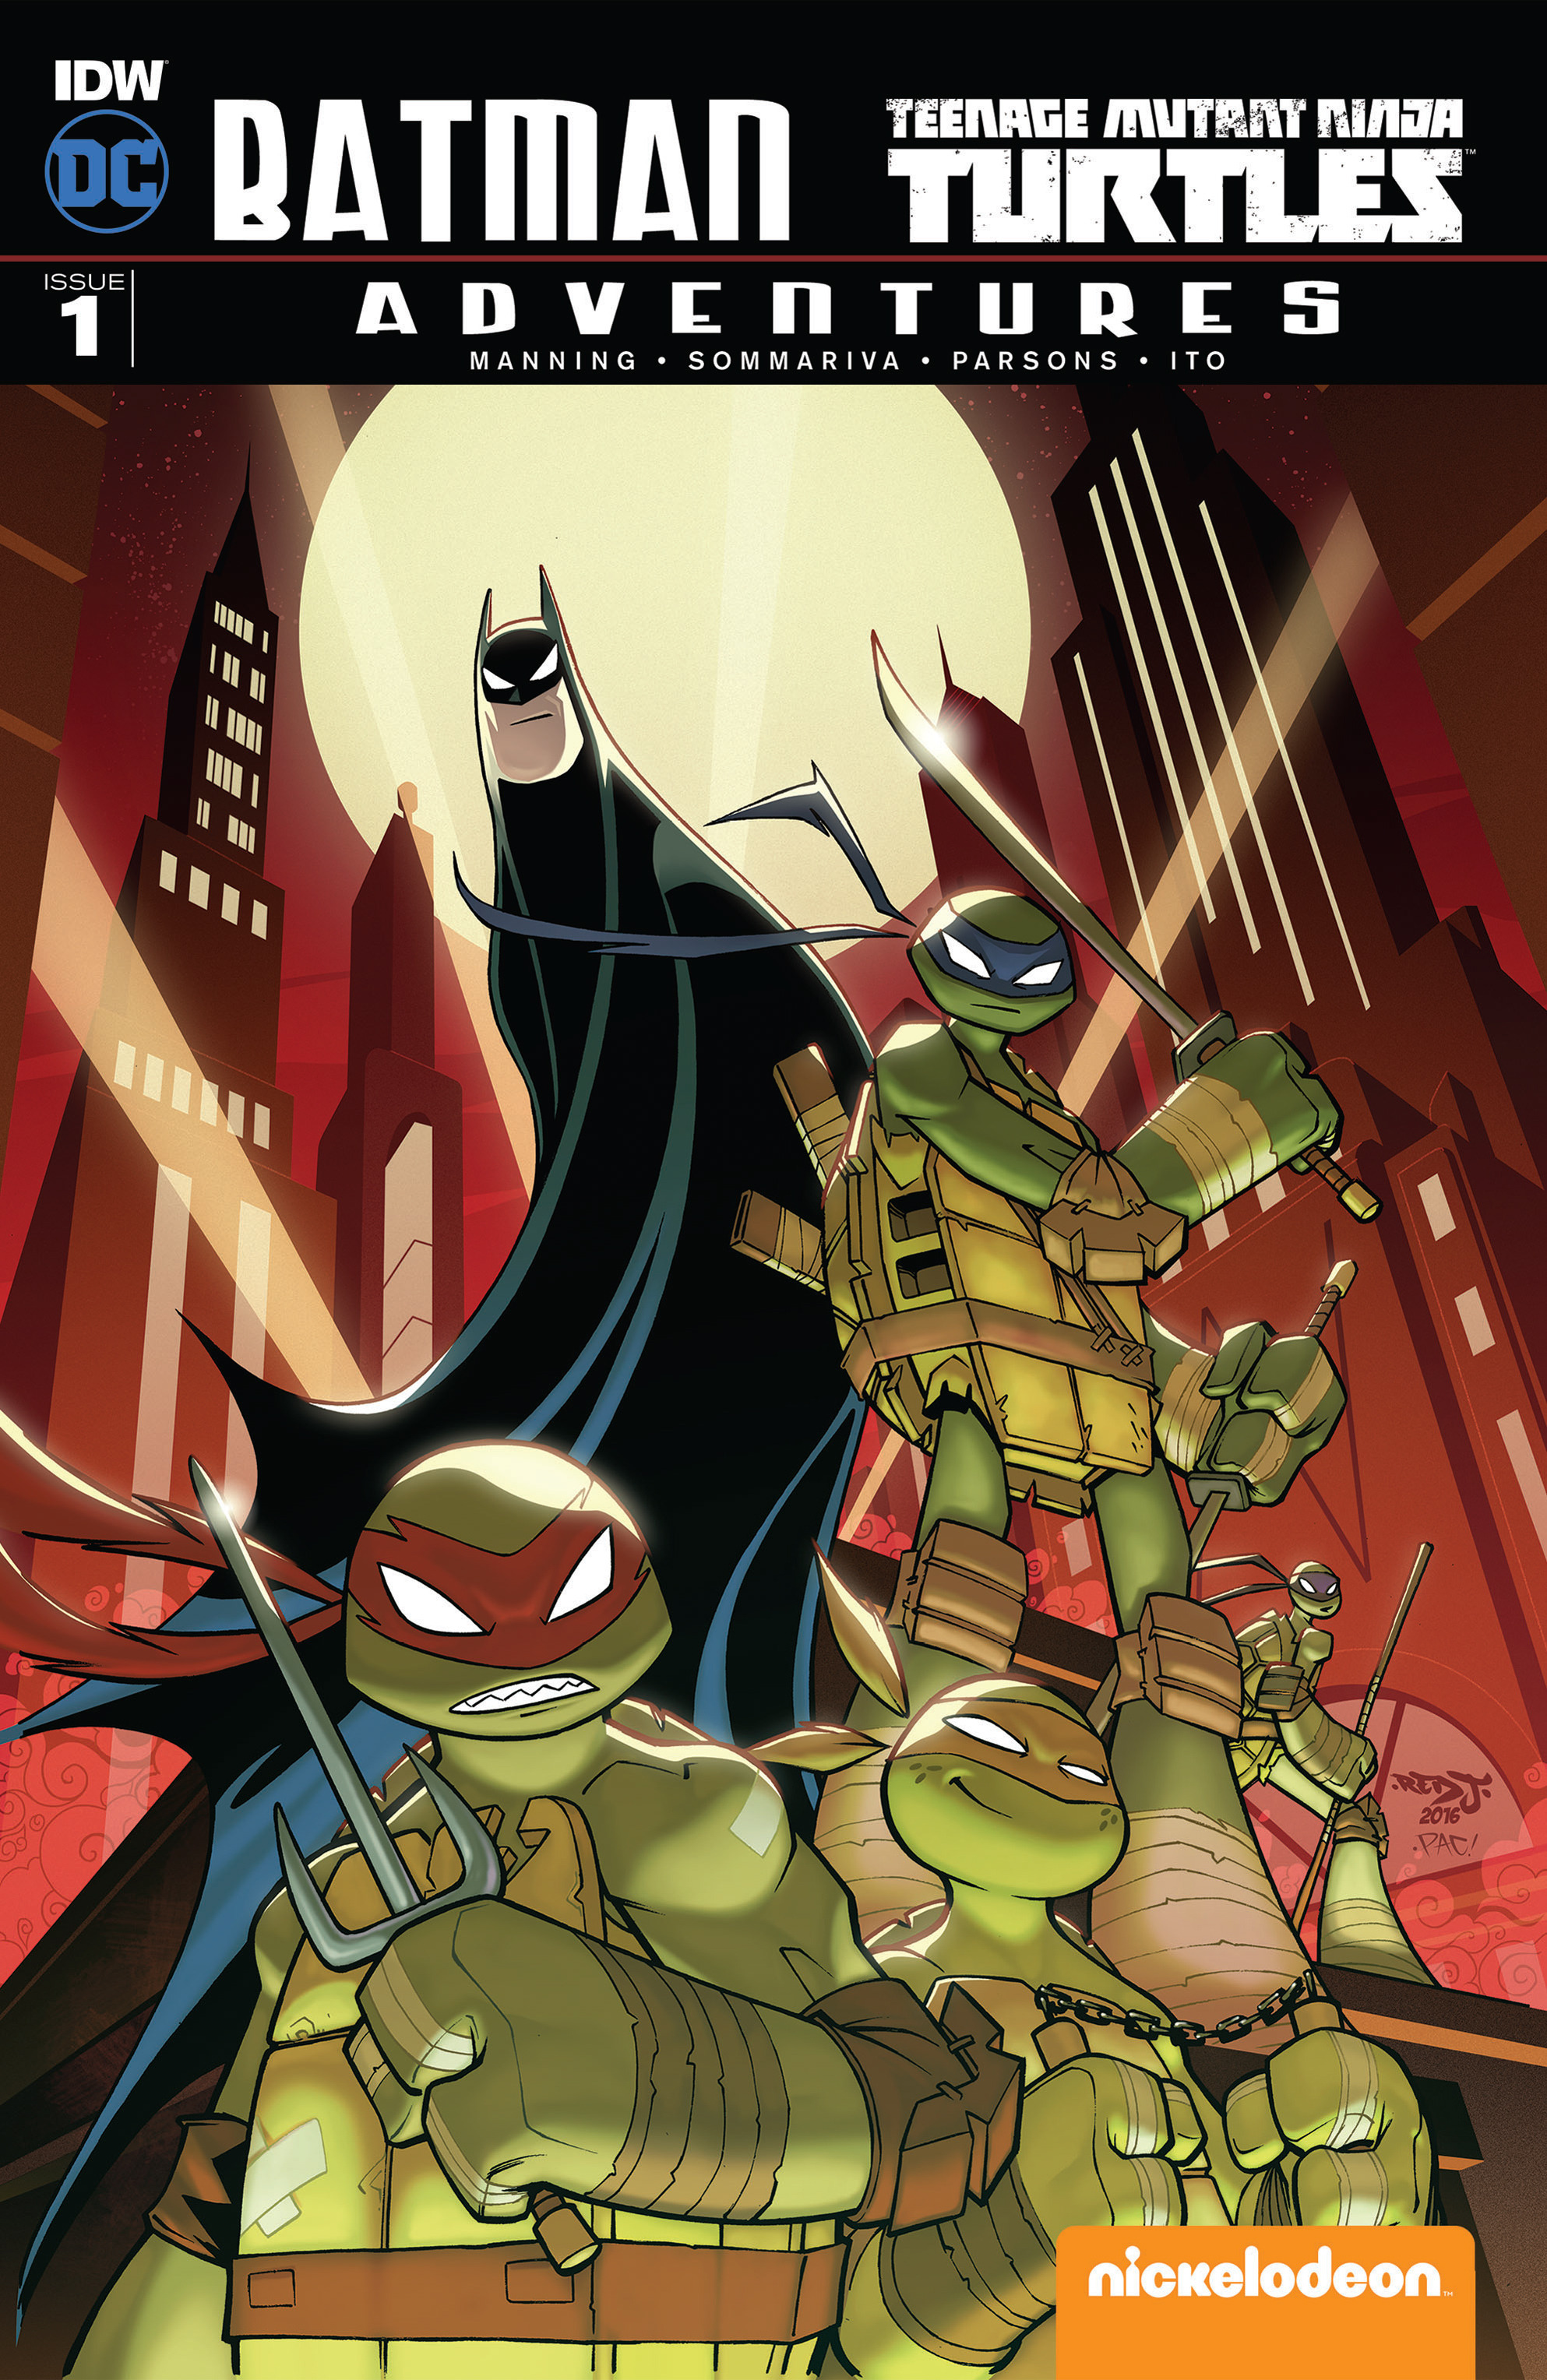 Read online Batman/Teenage Mutant Ninja Turtles Adventure comic -  Issue #1 - 1